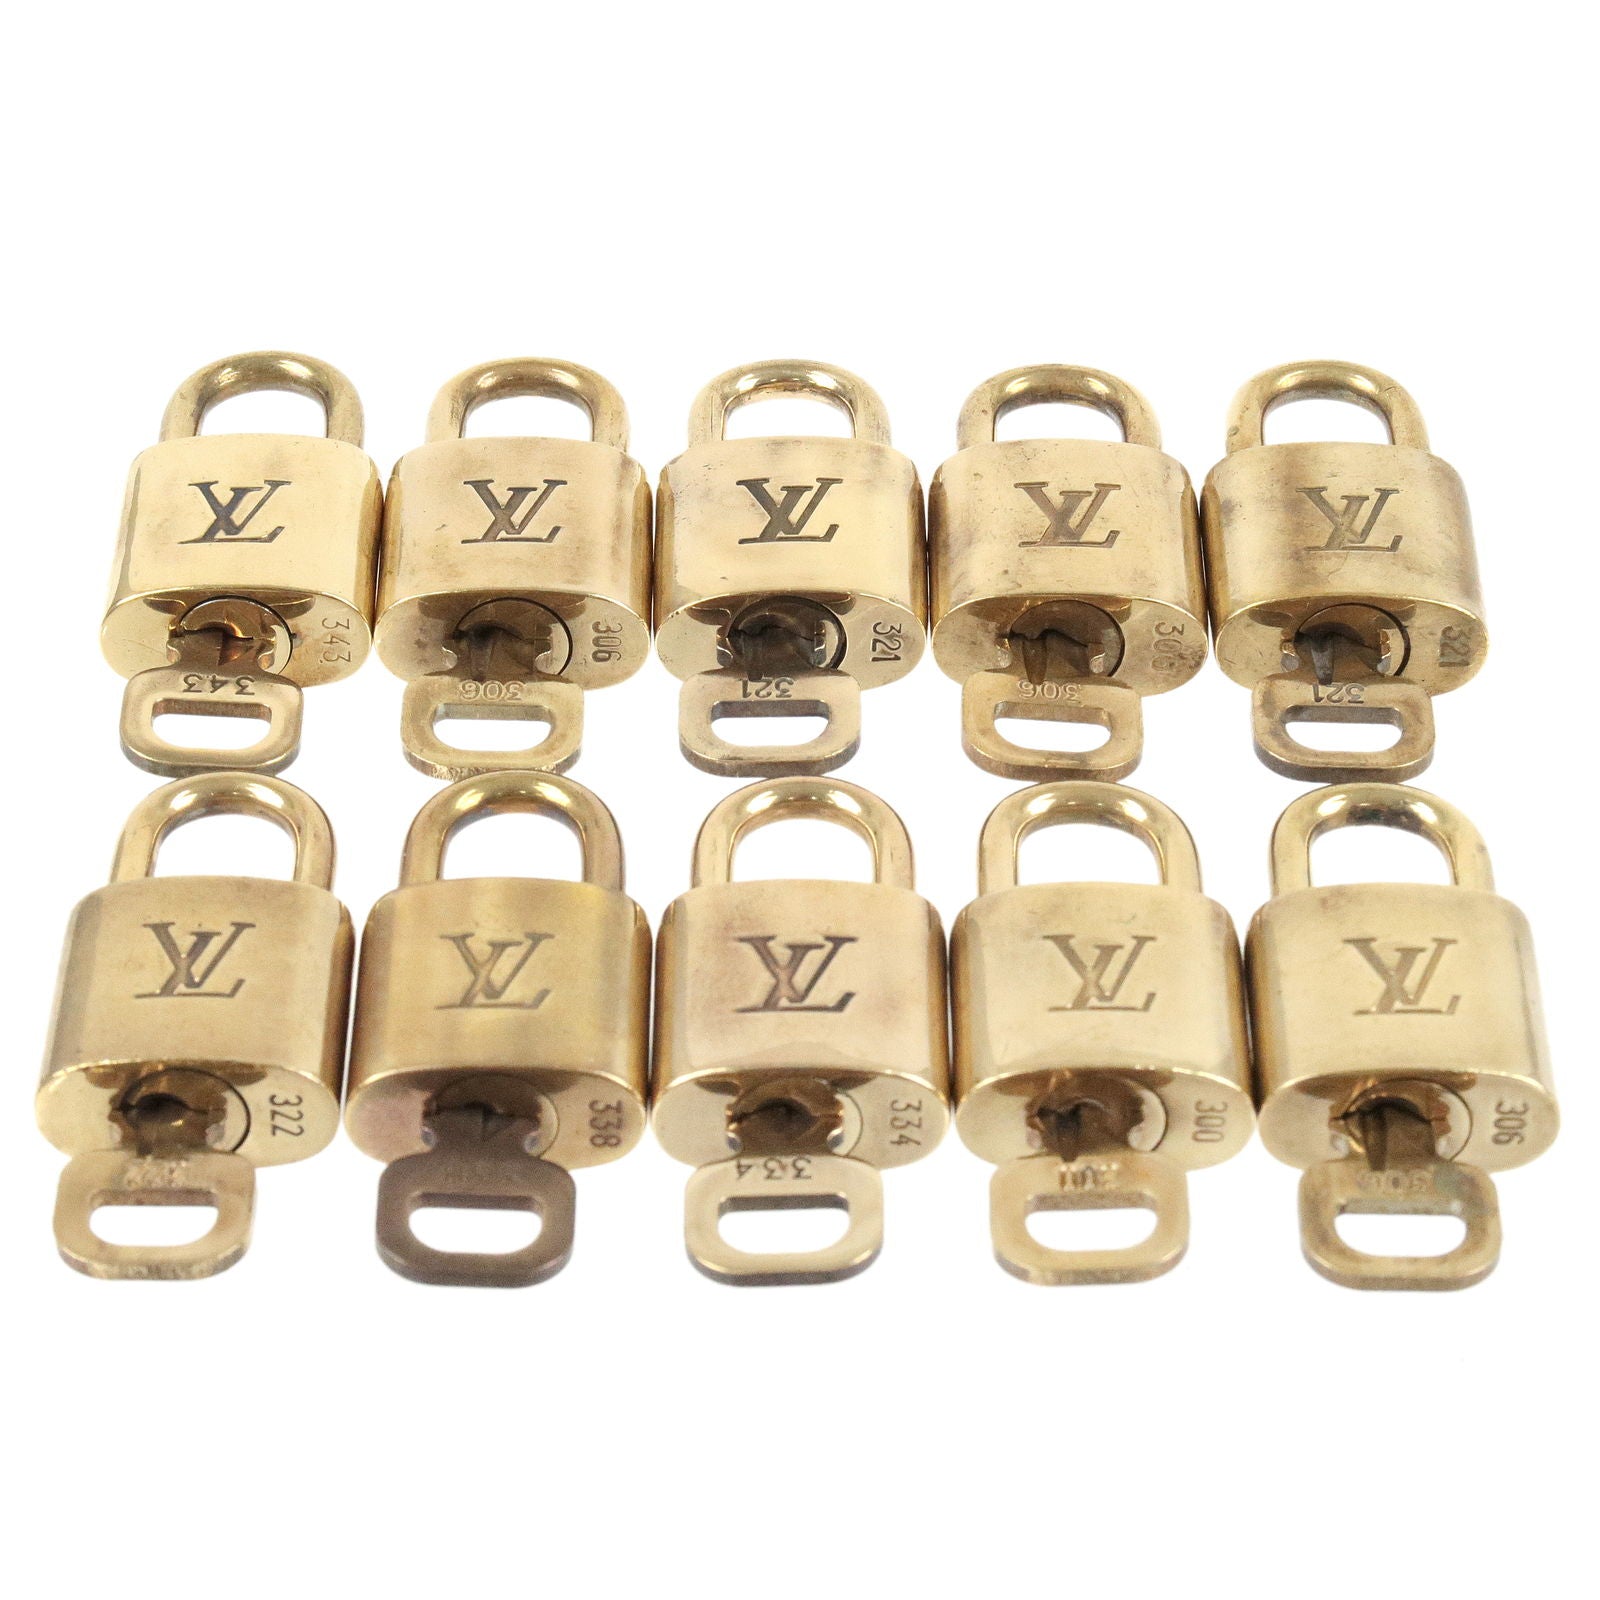  Louis Vuitton Cadena Padlock with Keys, Set of 30